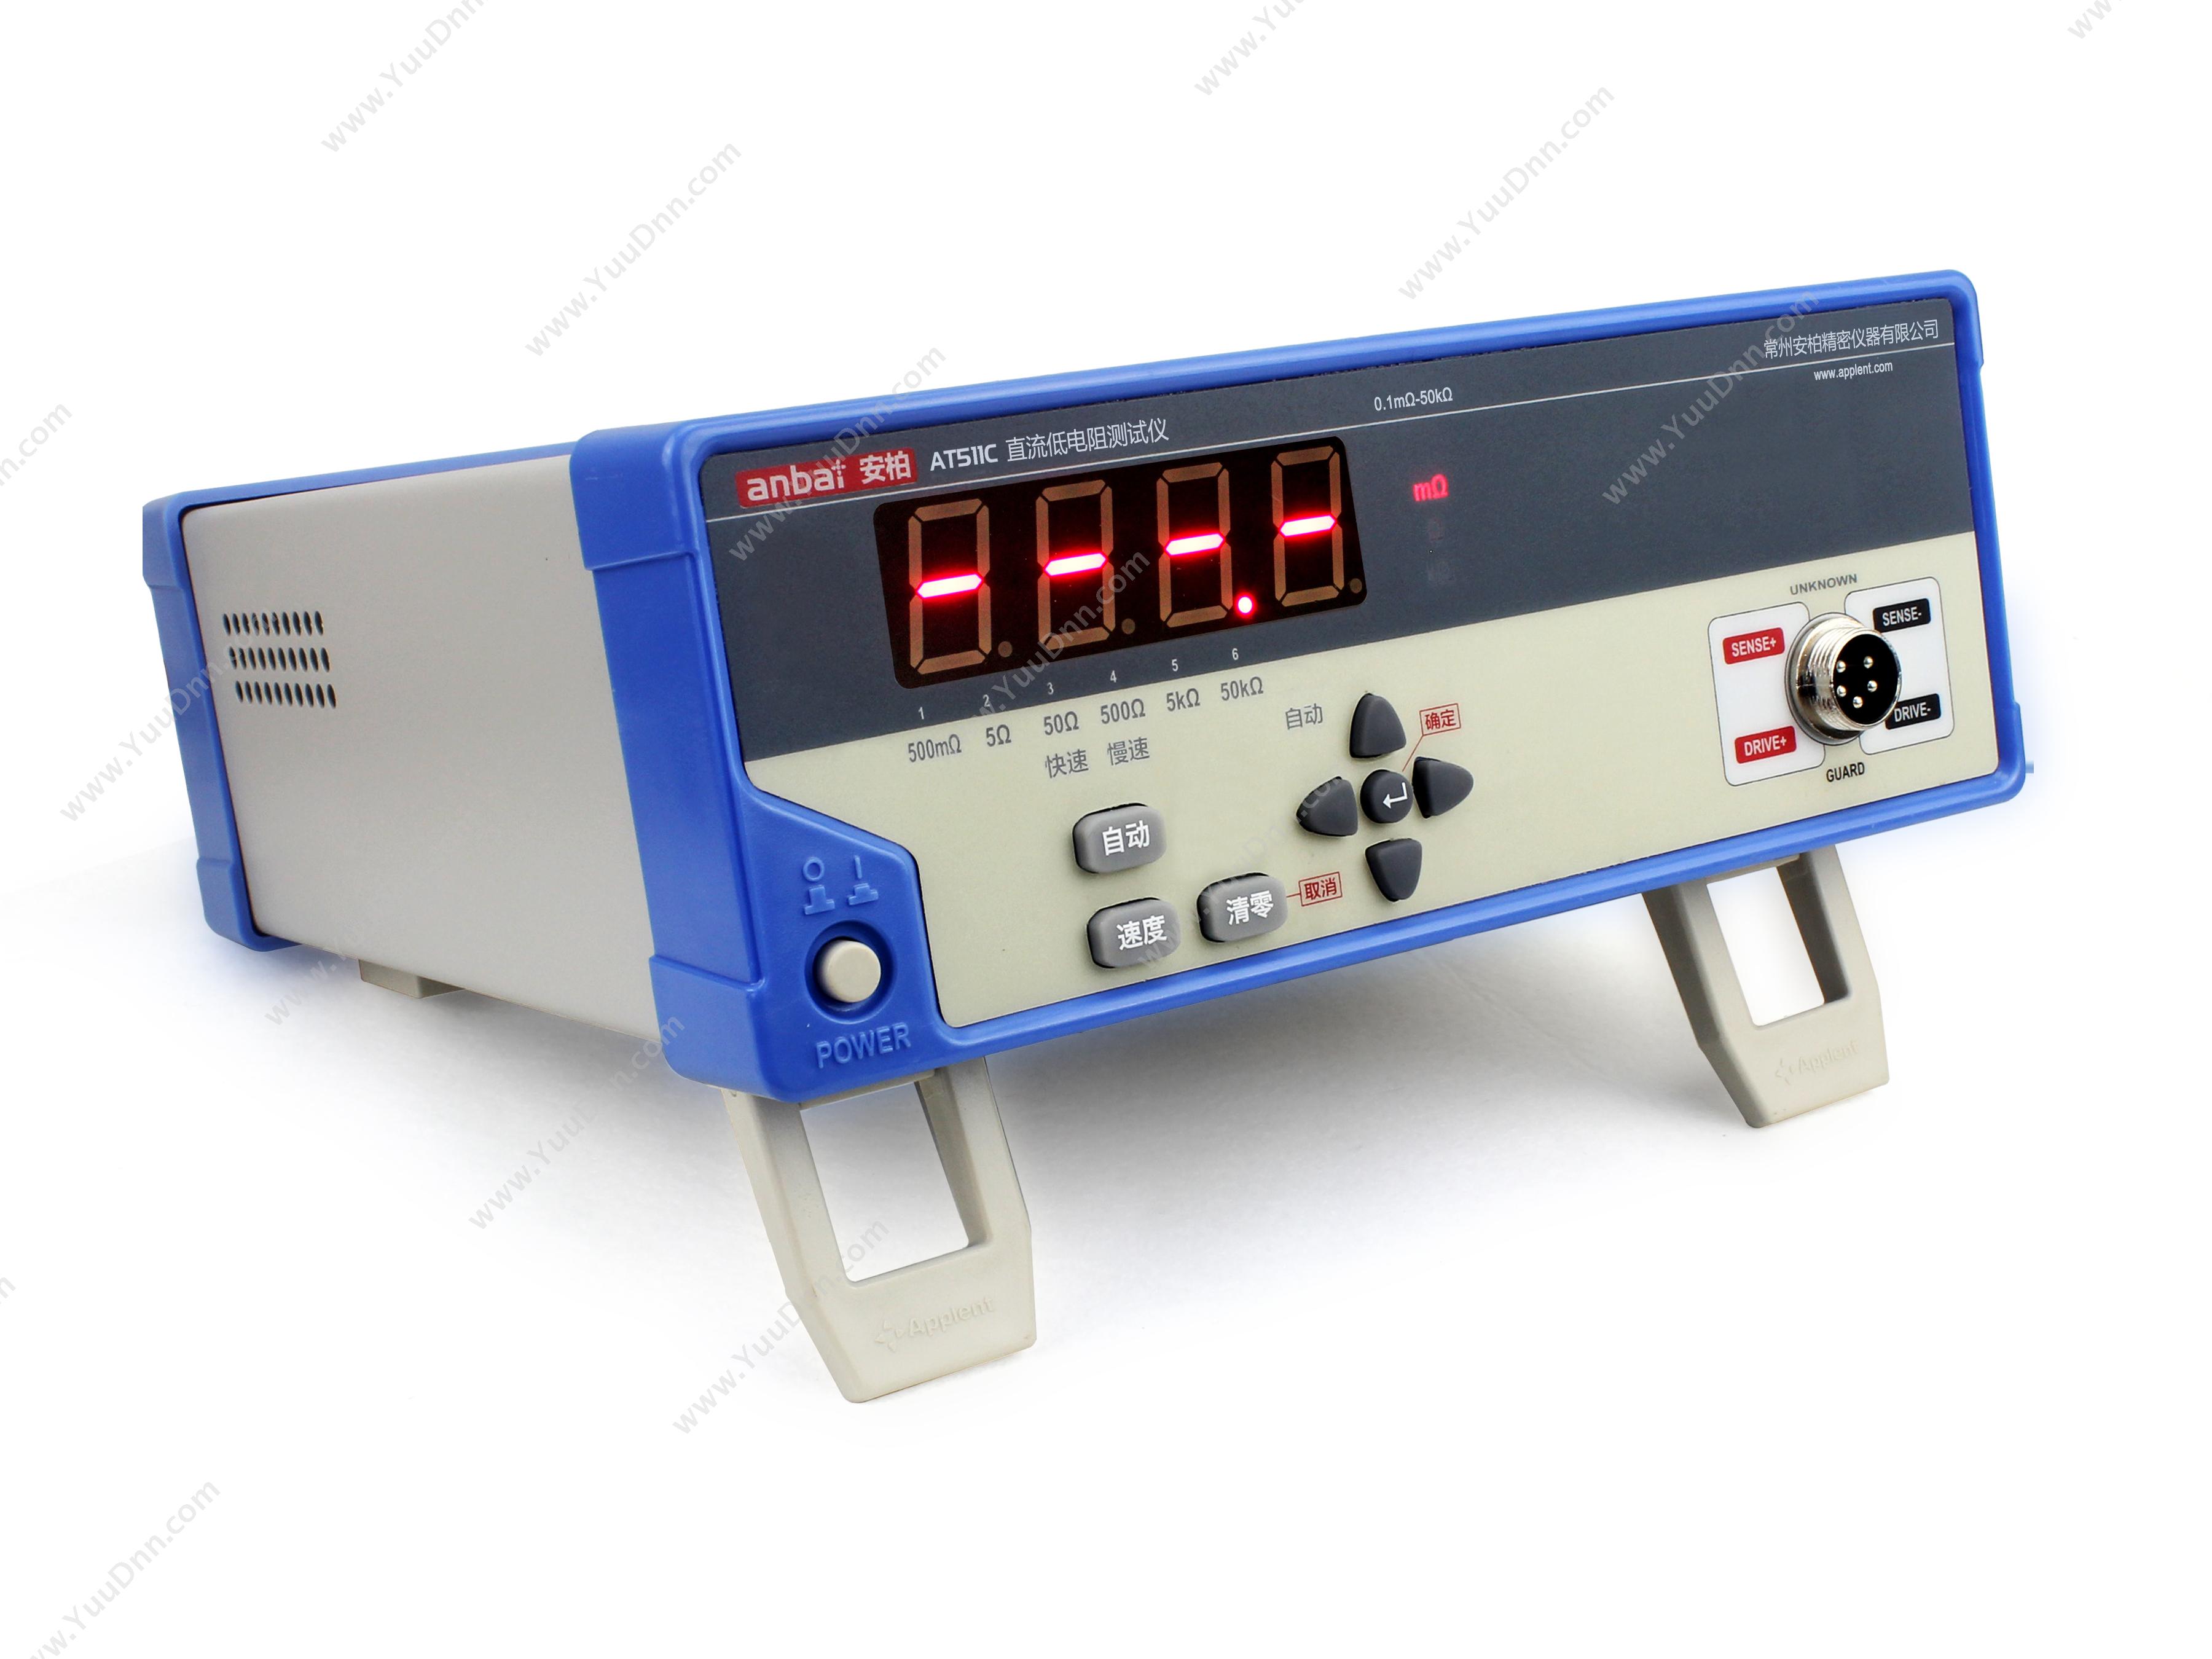 常州安柏 ApplentAT511C 直流低电阻测试仪(0.1mΩ~50kΩ)绝缘电阻测试仪